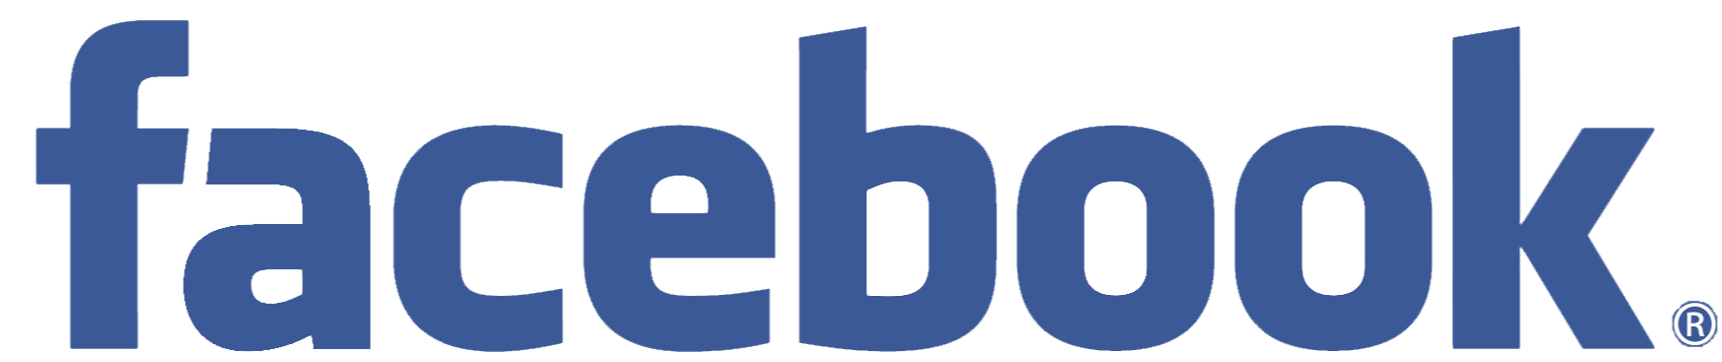 facebook logos PNG19749